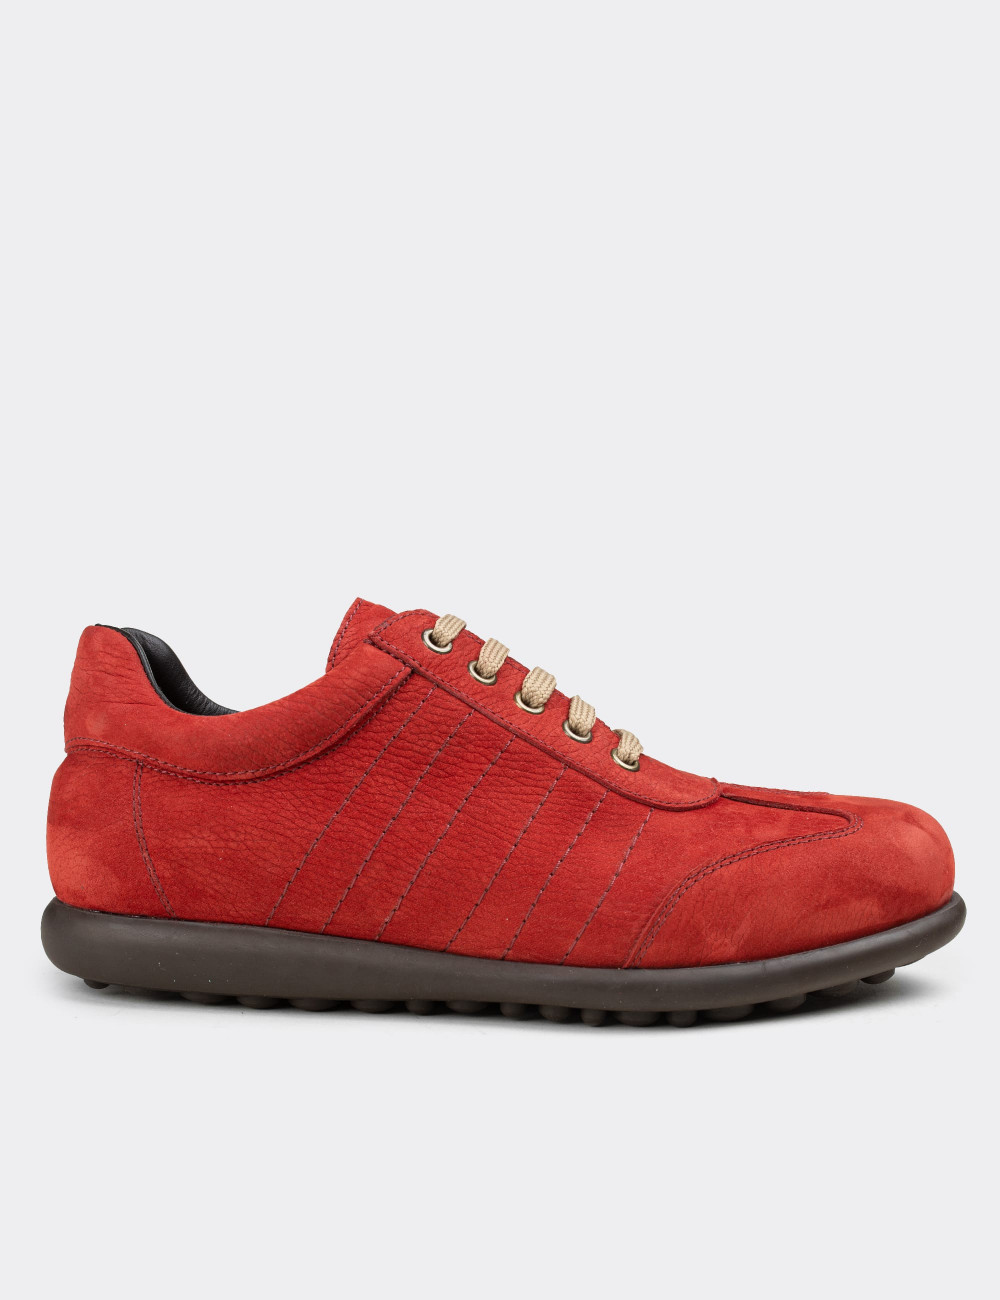 Hakiki Nubuk Kırmızı Günlük Erkek Ayakkabı - 01826MKRMC01